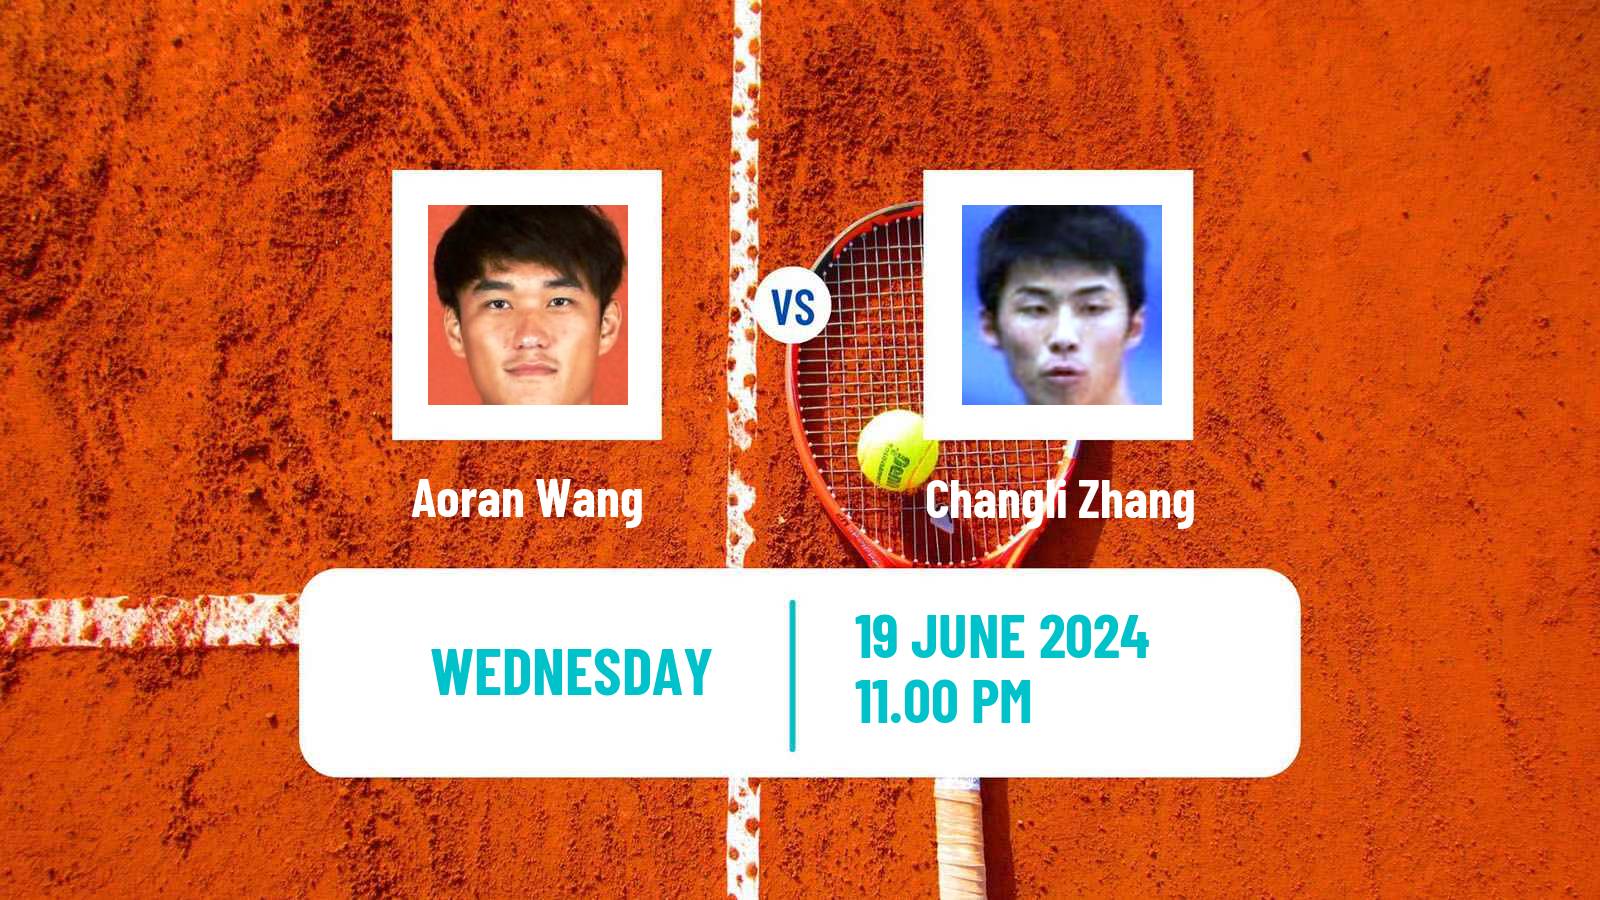 Tennis ITF M25 Luzhou Men Aoran Wang - Changli Zhang